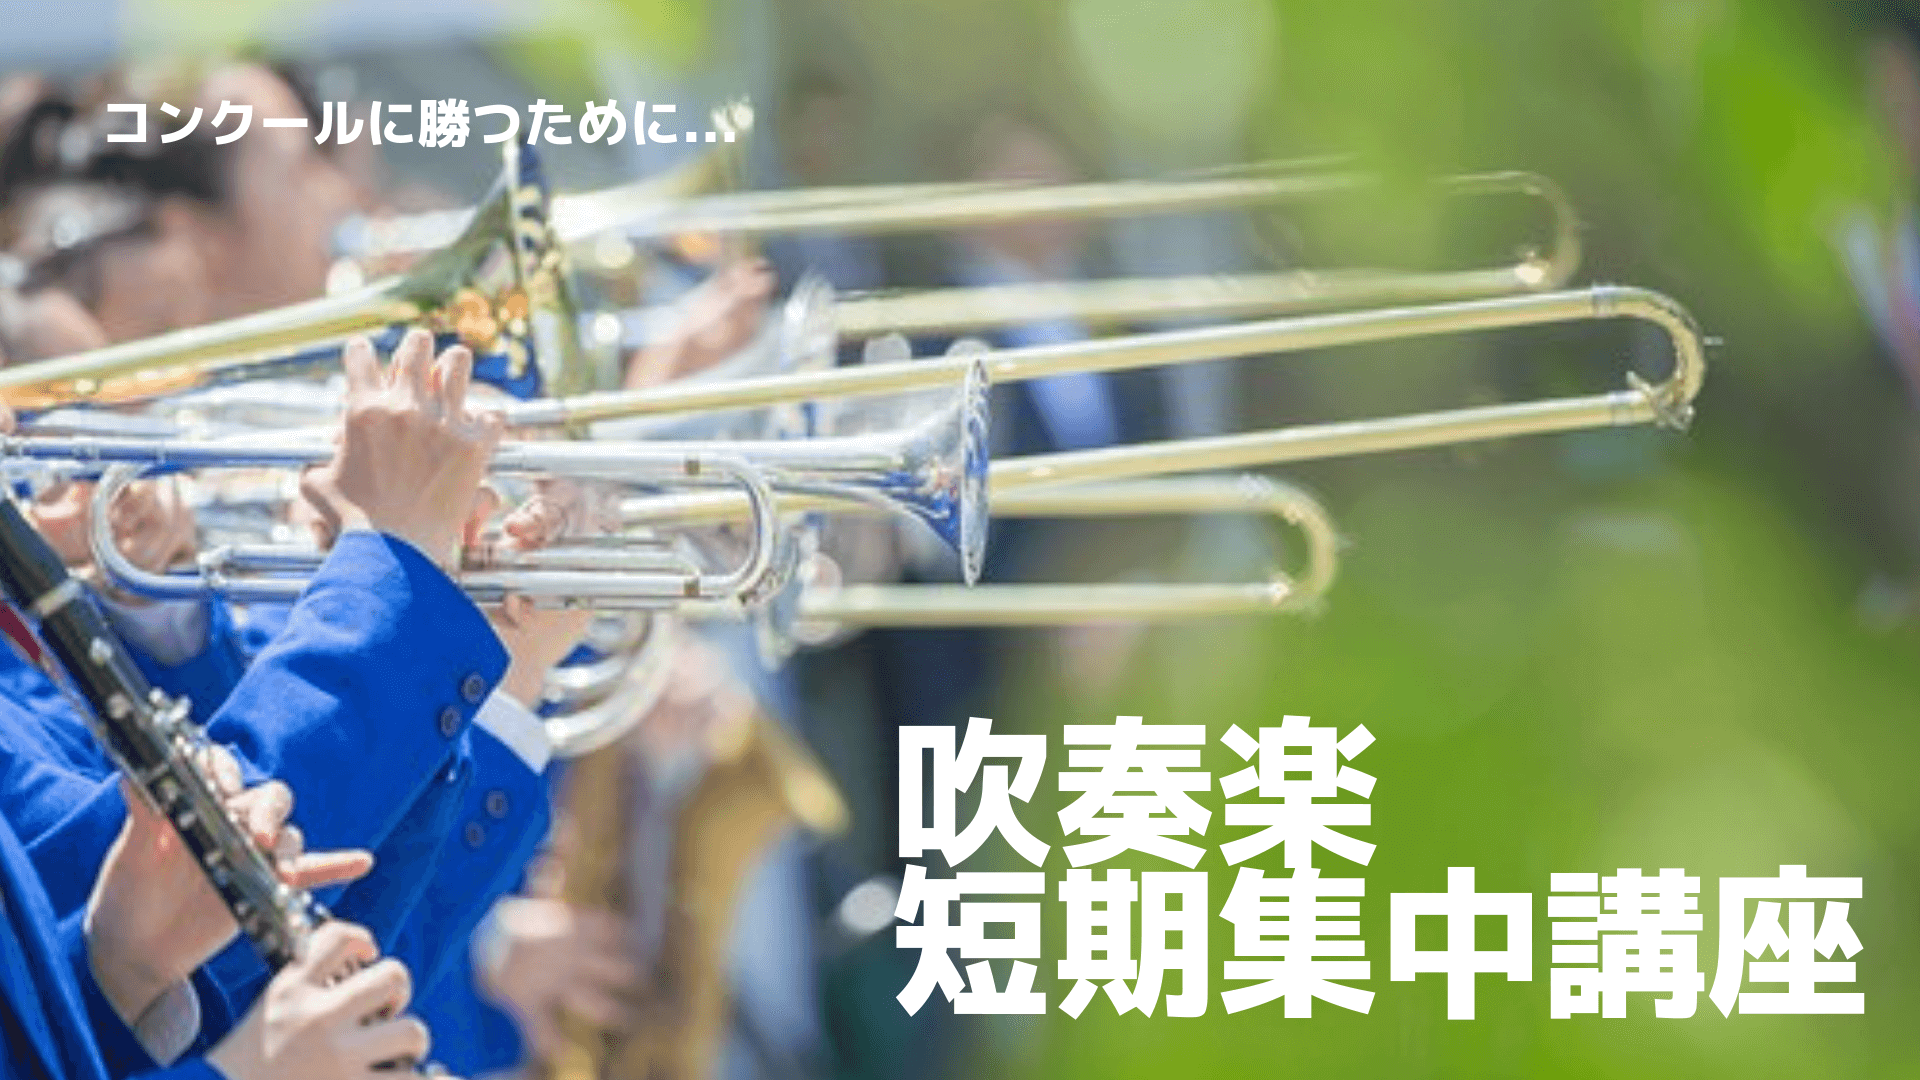 吹奏楽短期集中講座 名古屋の音楽教室 名古屋音楽館ミュージックスクール